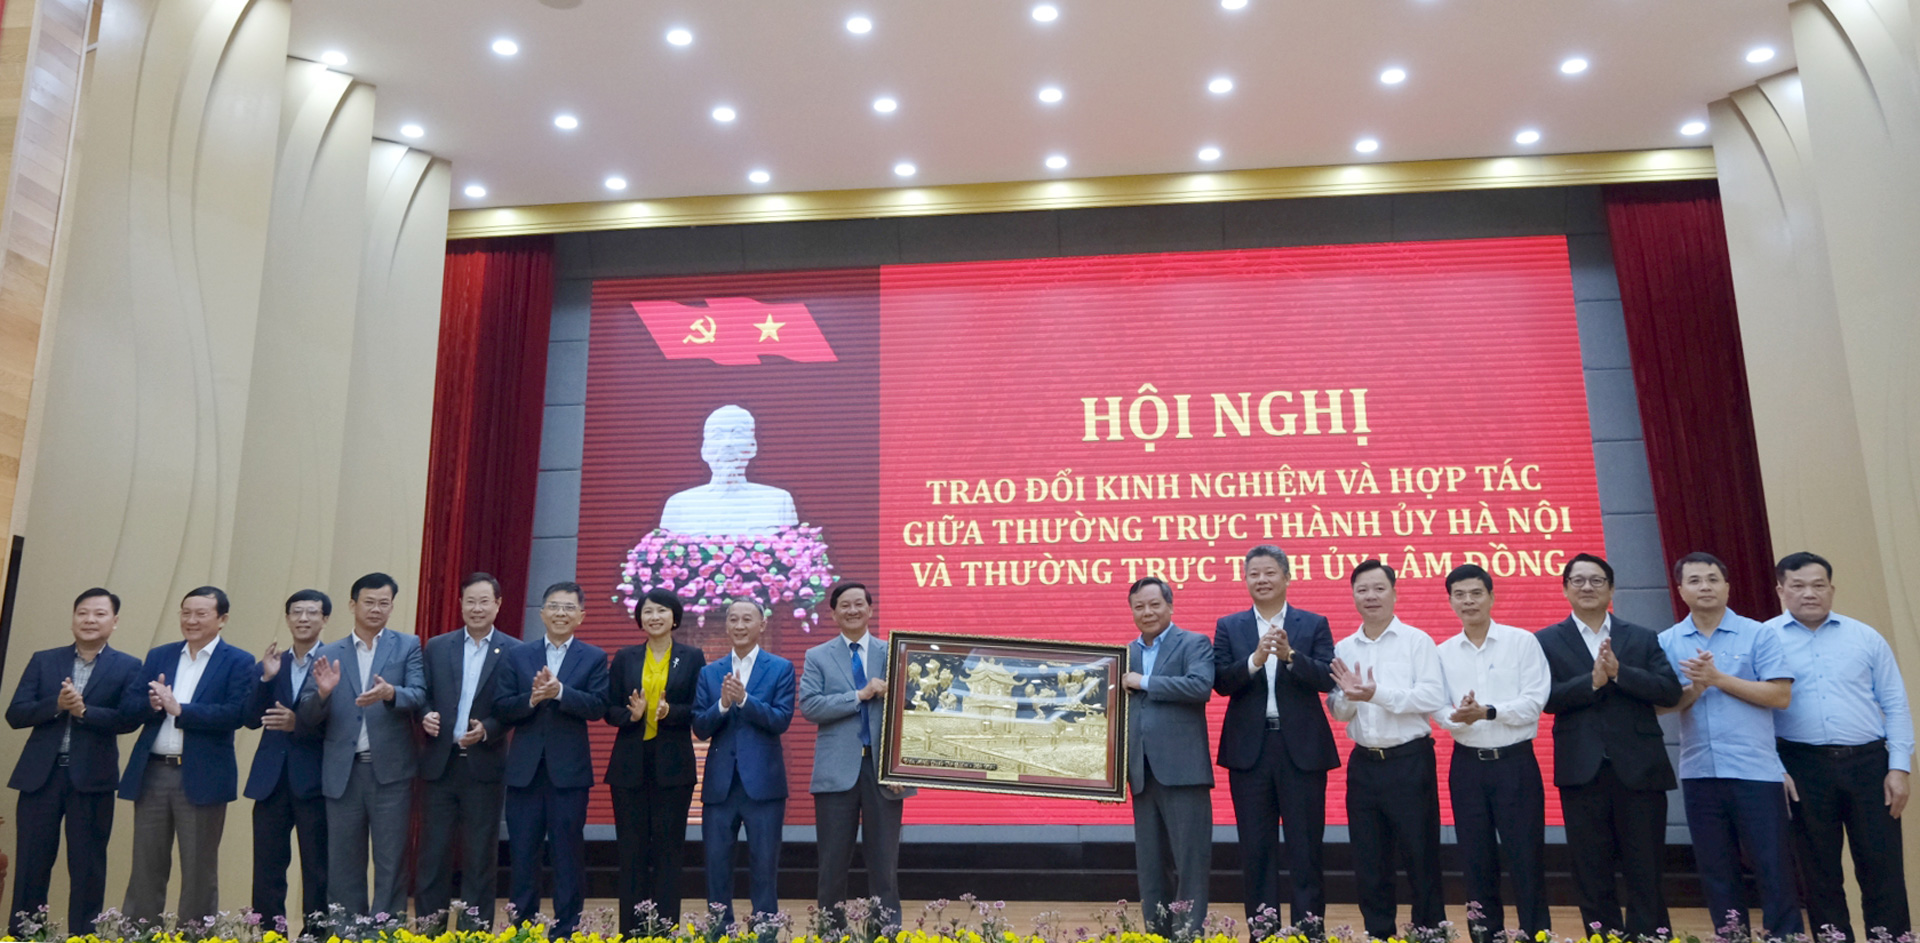 Đoàn công tác của Thành ủy Hà Nội tặng quà Tỉnh ủy Lâm Đồng